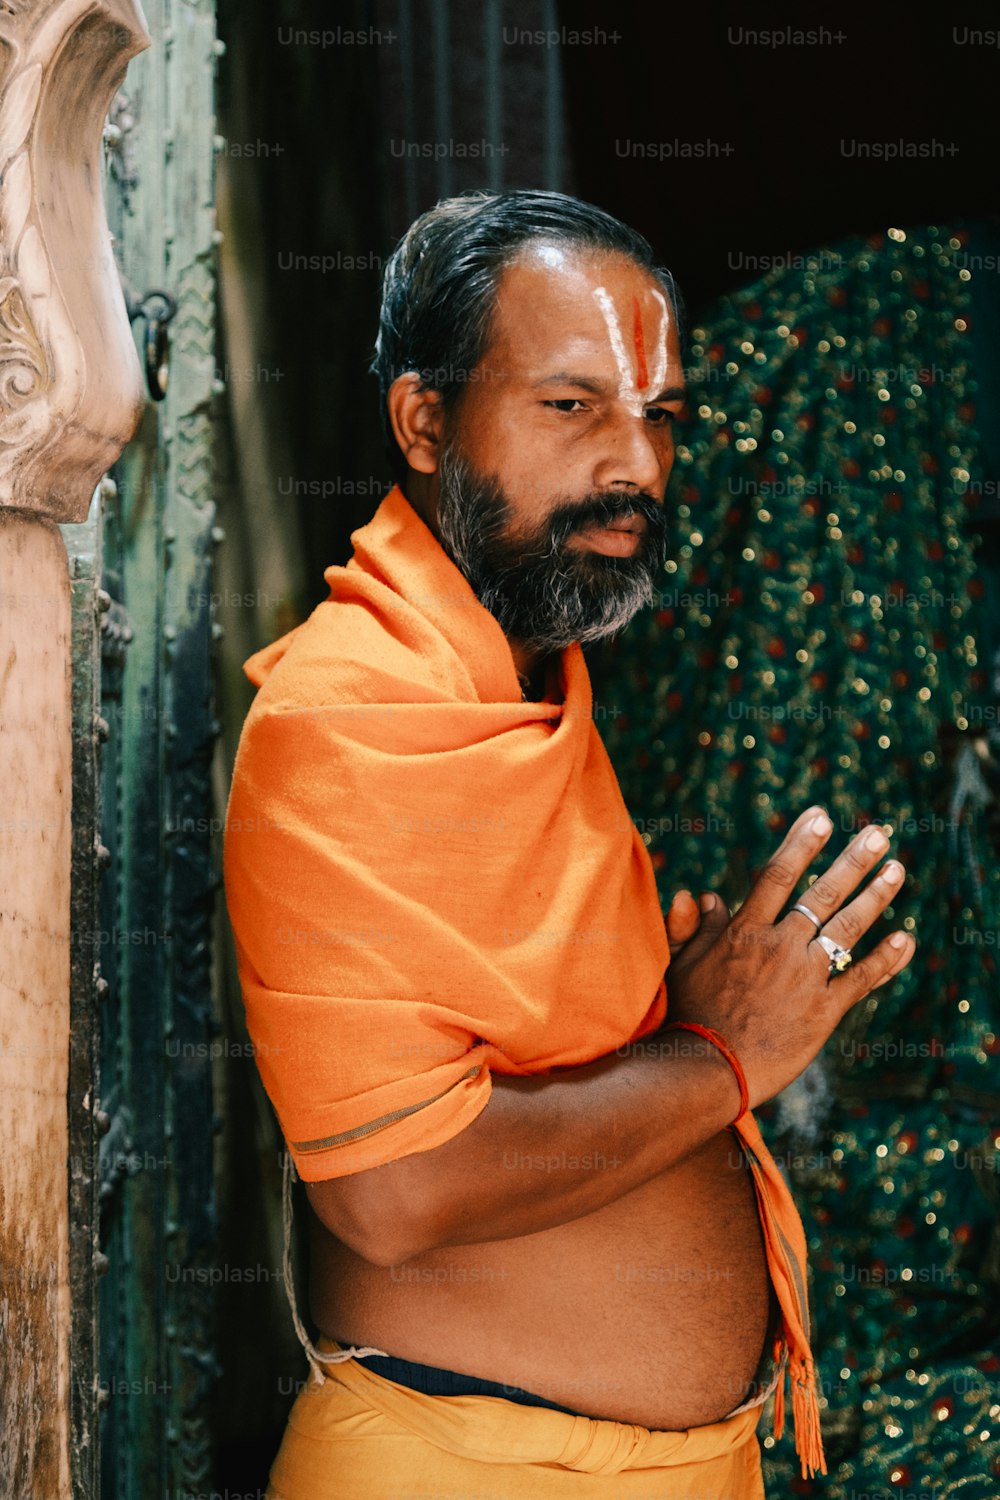 Ein Mann mit einem orangefarbenen Schal, der vor einer Tür steht